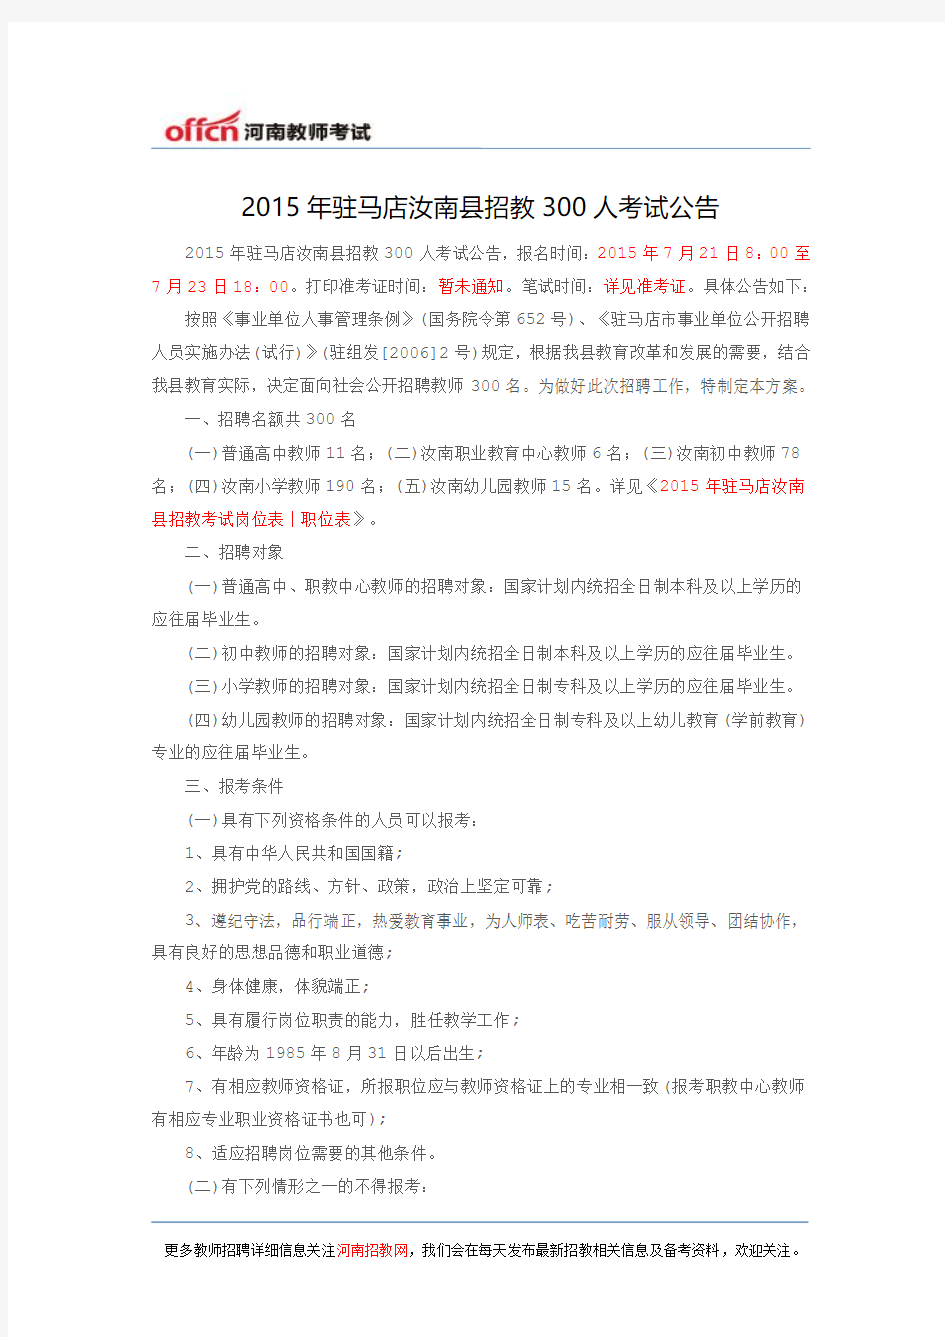 2015年驻马店汝南县招教300人考试公告